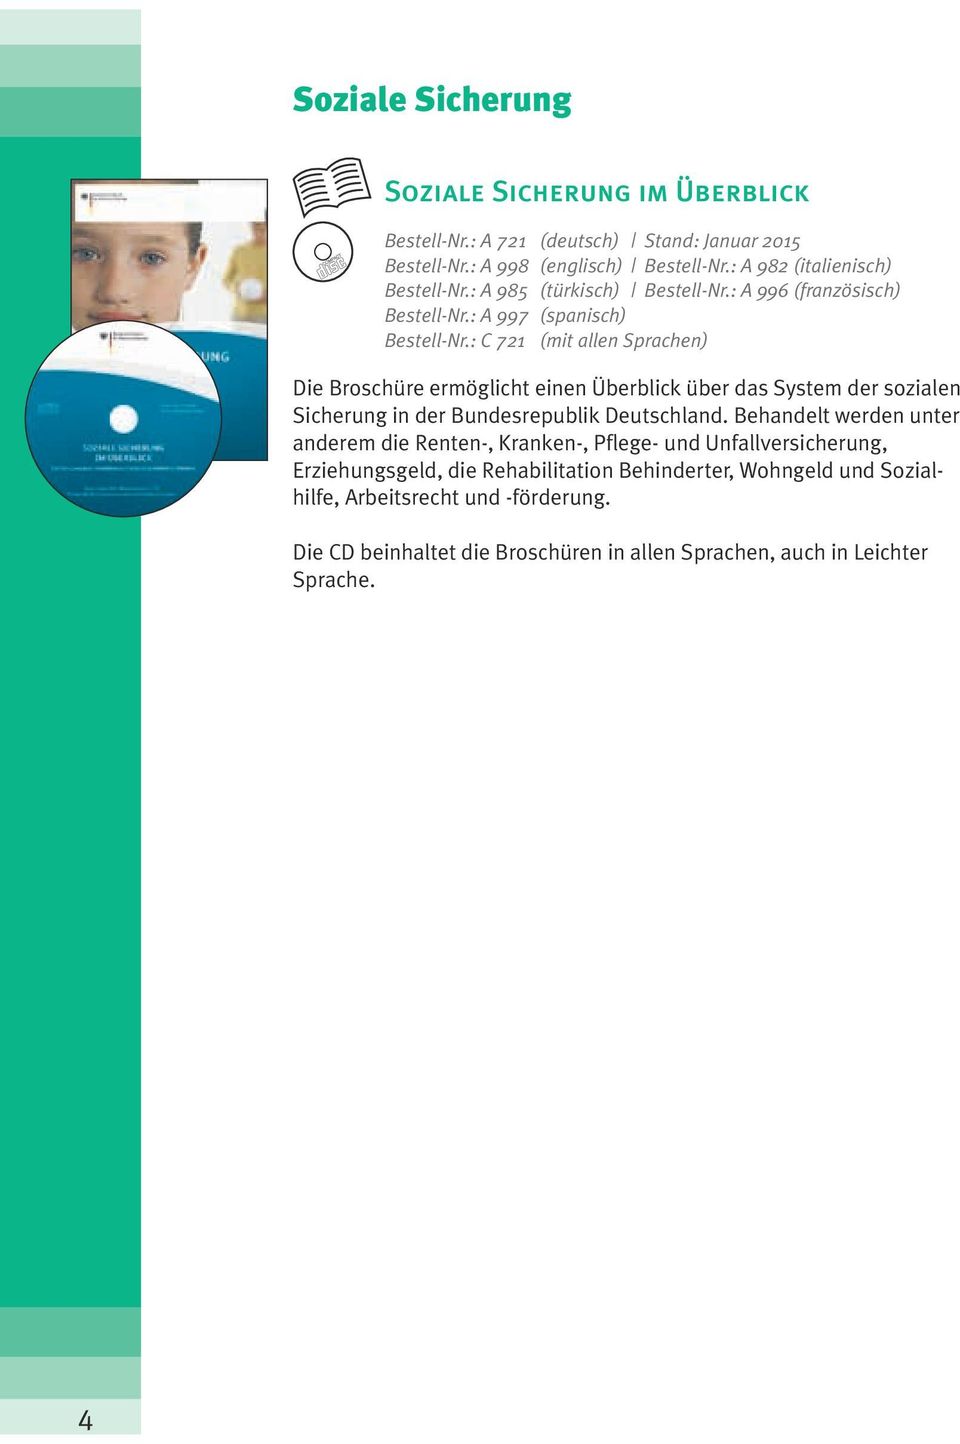 : C 721 (mit allen Sprachen) Die Broschüre ermöglicht einen Überblick über das System der sozialen Sicherung in der Bundesrepublik Deutschland.